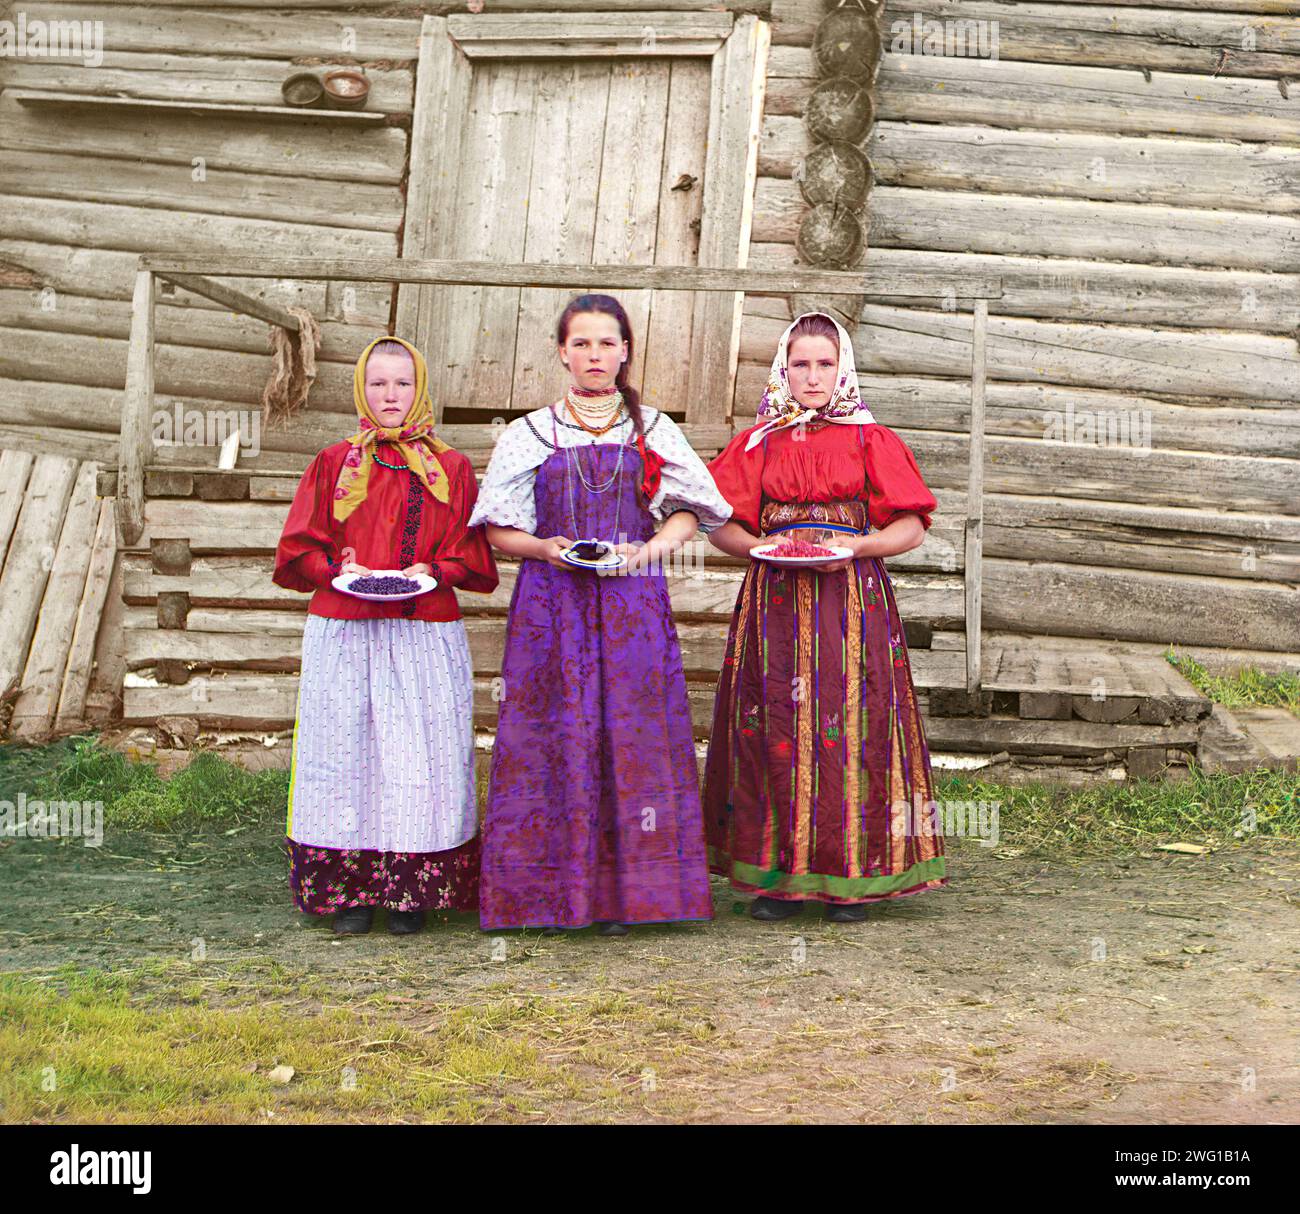 Filles paysannes [Empire russe], 1909. Trois jeunes femmes offrent des baies aux visiteurs de leur izba, une maison traditionnelle en bois, dans une zone rurale le long de la rivière Sheksna, près de la ville de Kirillov. Banque D'Images